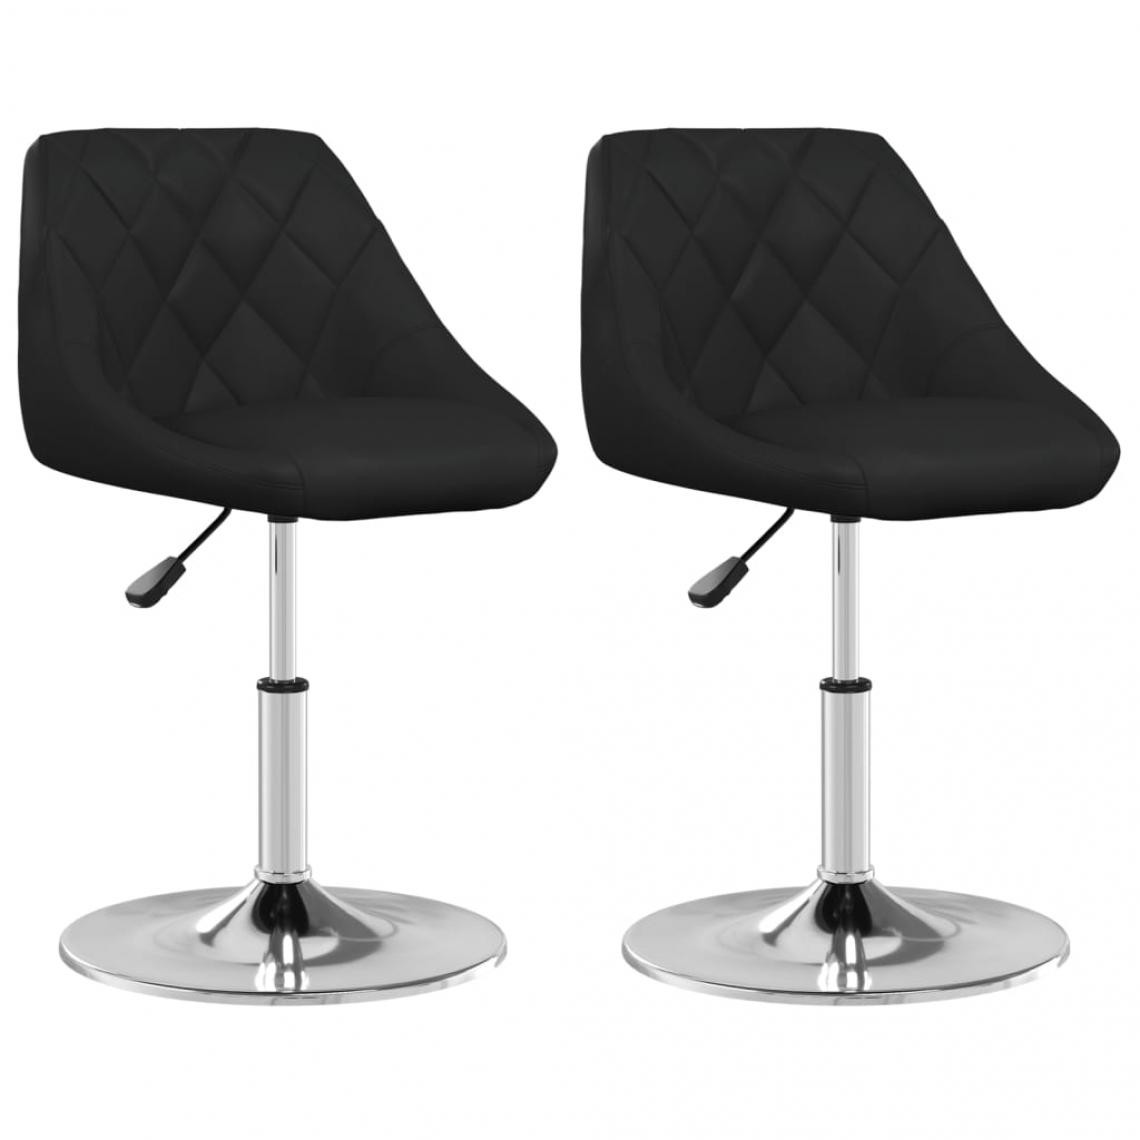 Decoshop26 - Lot de 2 chaises de salle à manger cuisine design moderne similicuir noir CDS020846 - Chaises